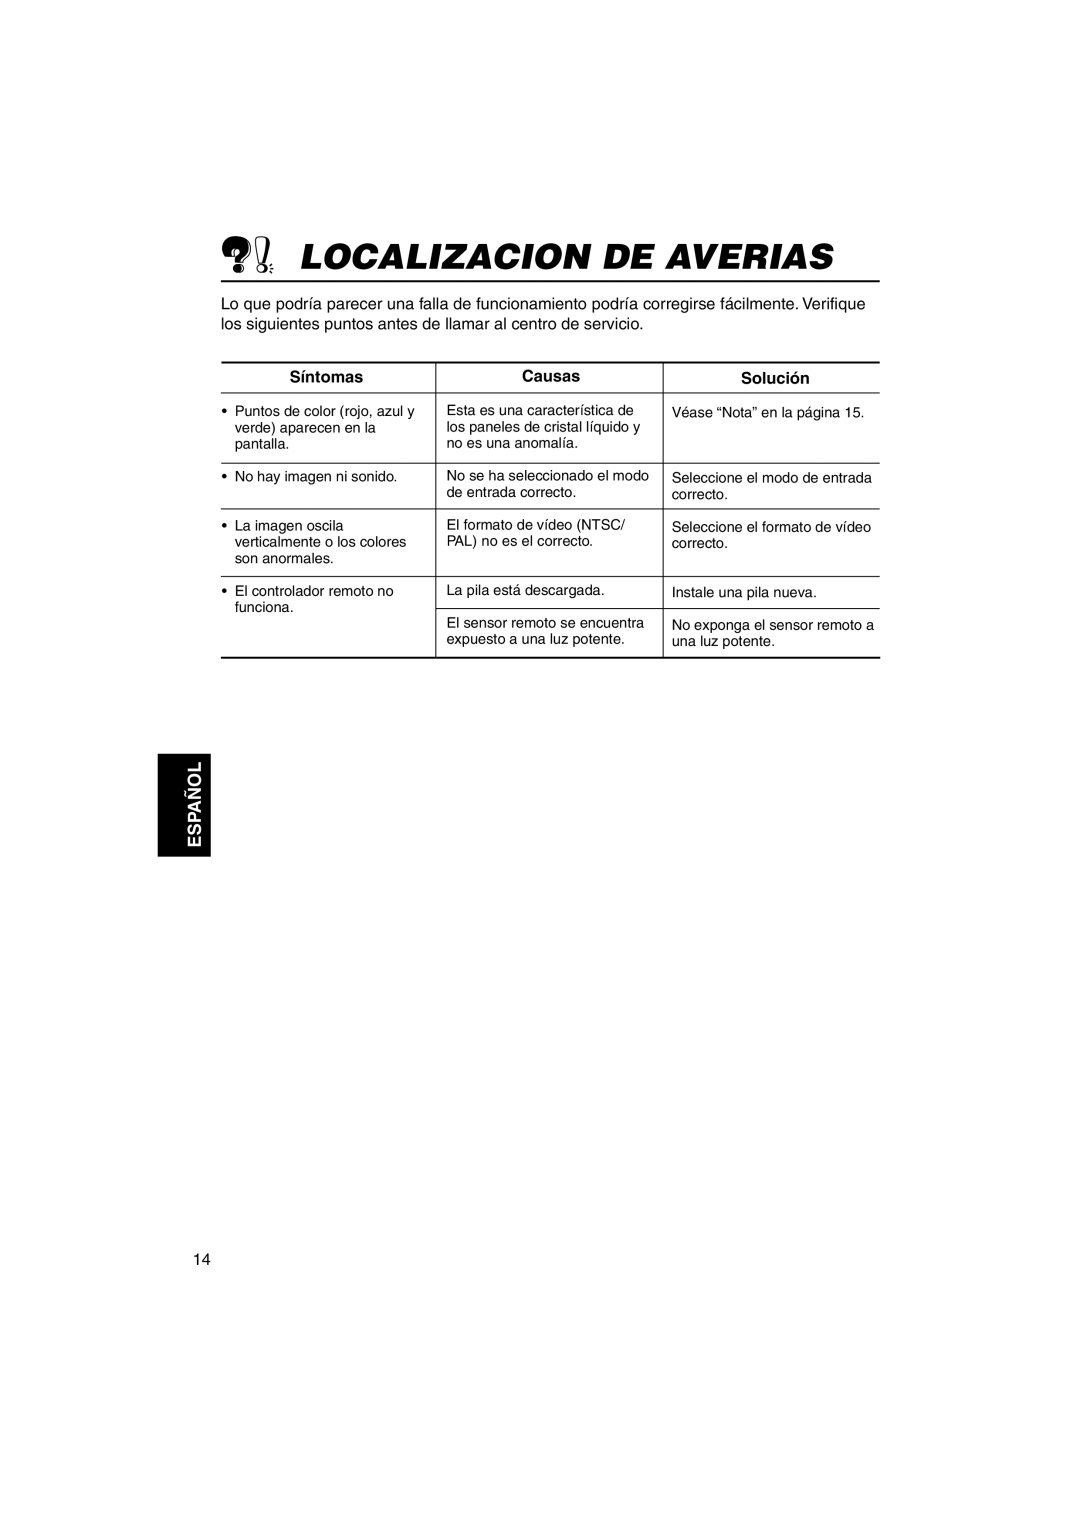 JVC KV-MH6500 manual Localizacion De Averias, Síntomas, Causas, Solución, Español 